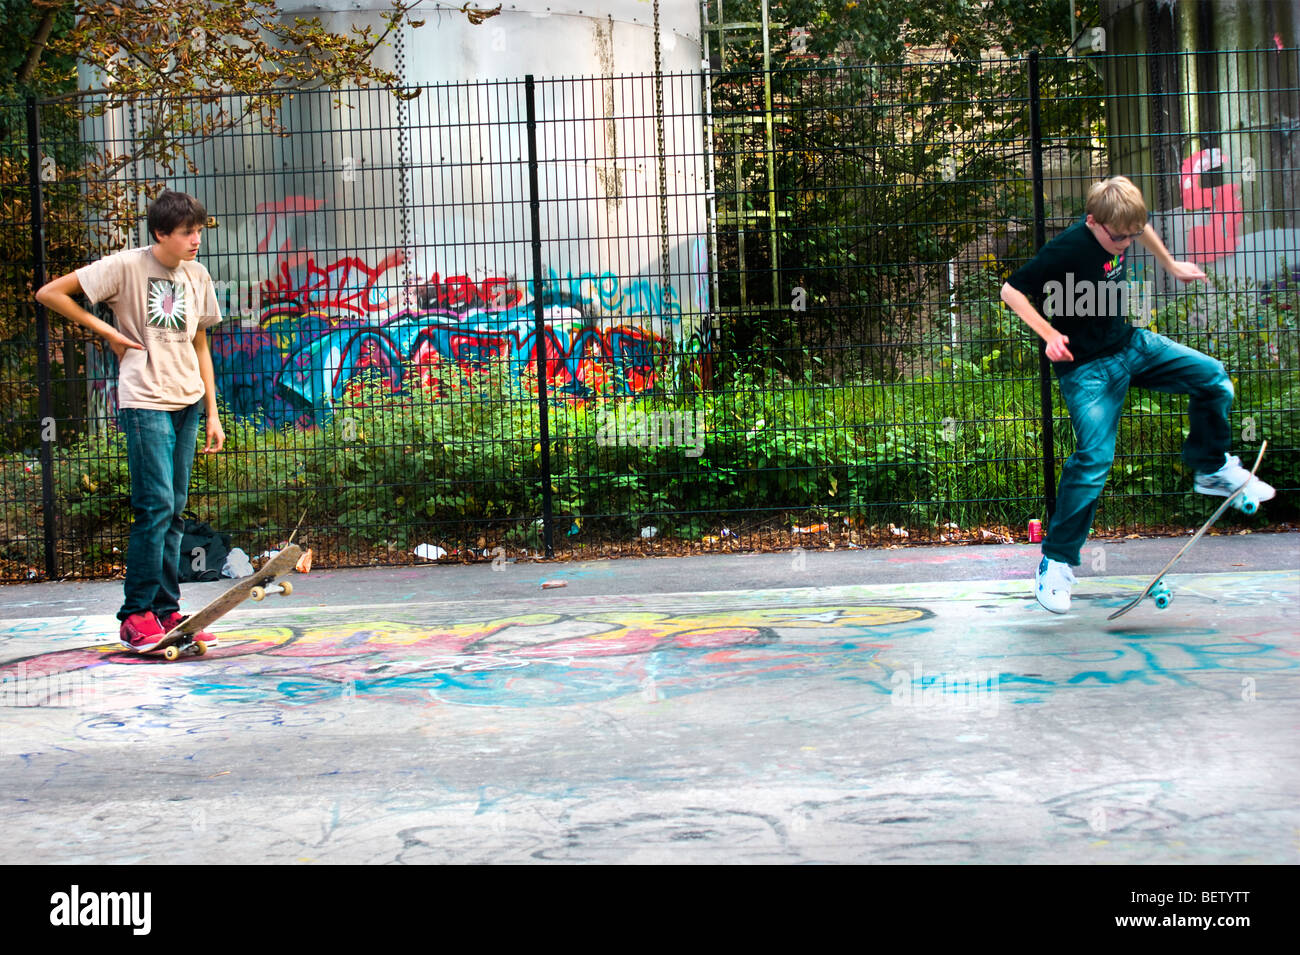 Zwei jungen probieren Sie ihre Skateboardtricks im Alexandra Park Skate Park. Stockfoto